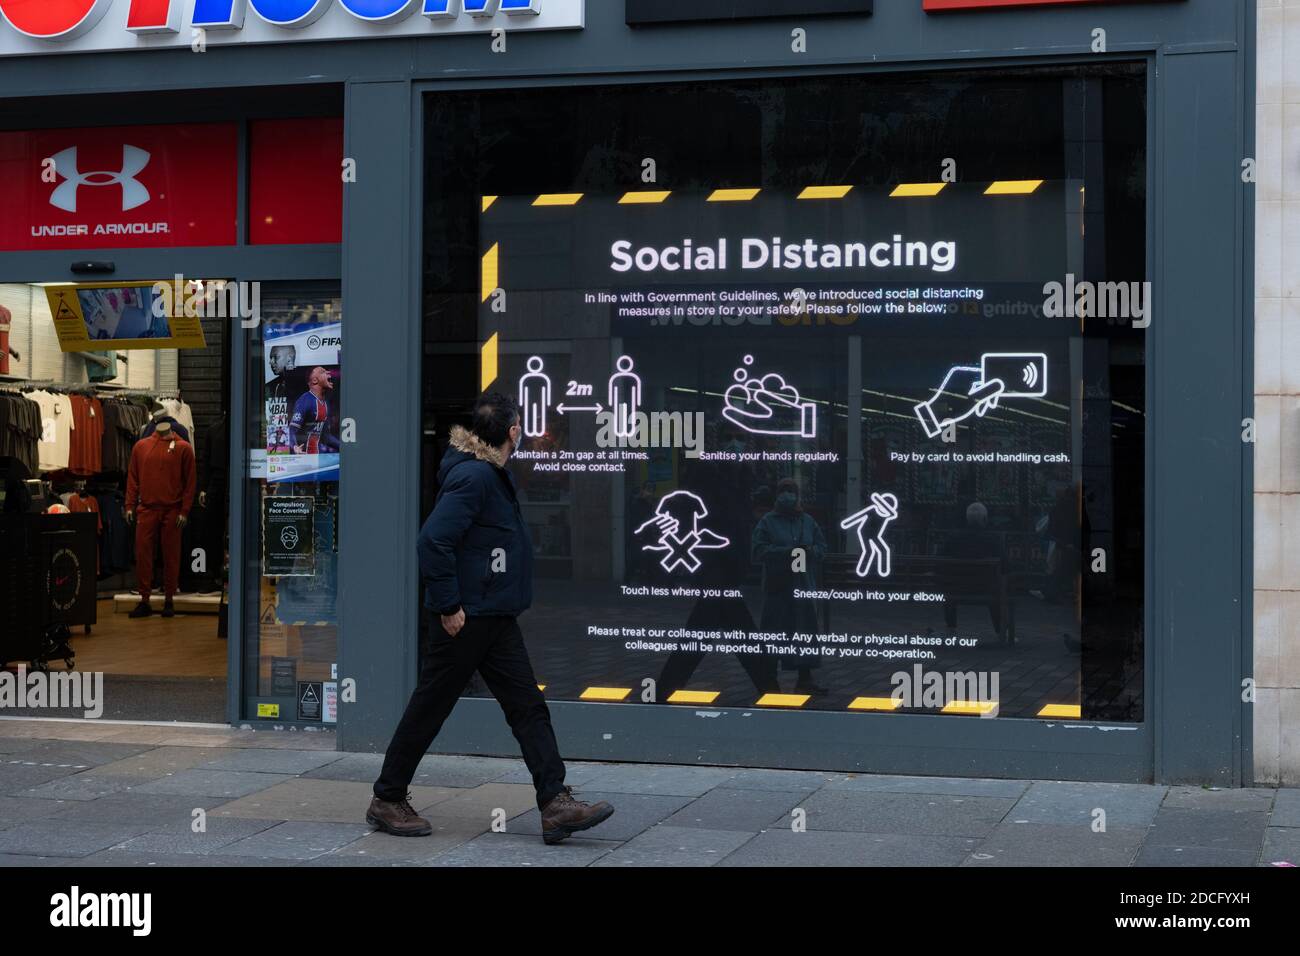 Ein Mitglied der Öffentlichkeit geht während der Coronavirus-Pandemie an einem sozialen Distanzierungsschild in Glasgow, Schottland, Großbritannien vorbei Stockfoto